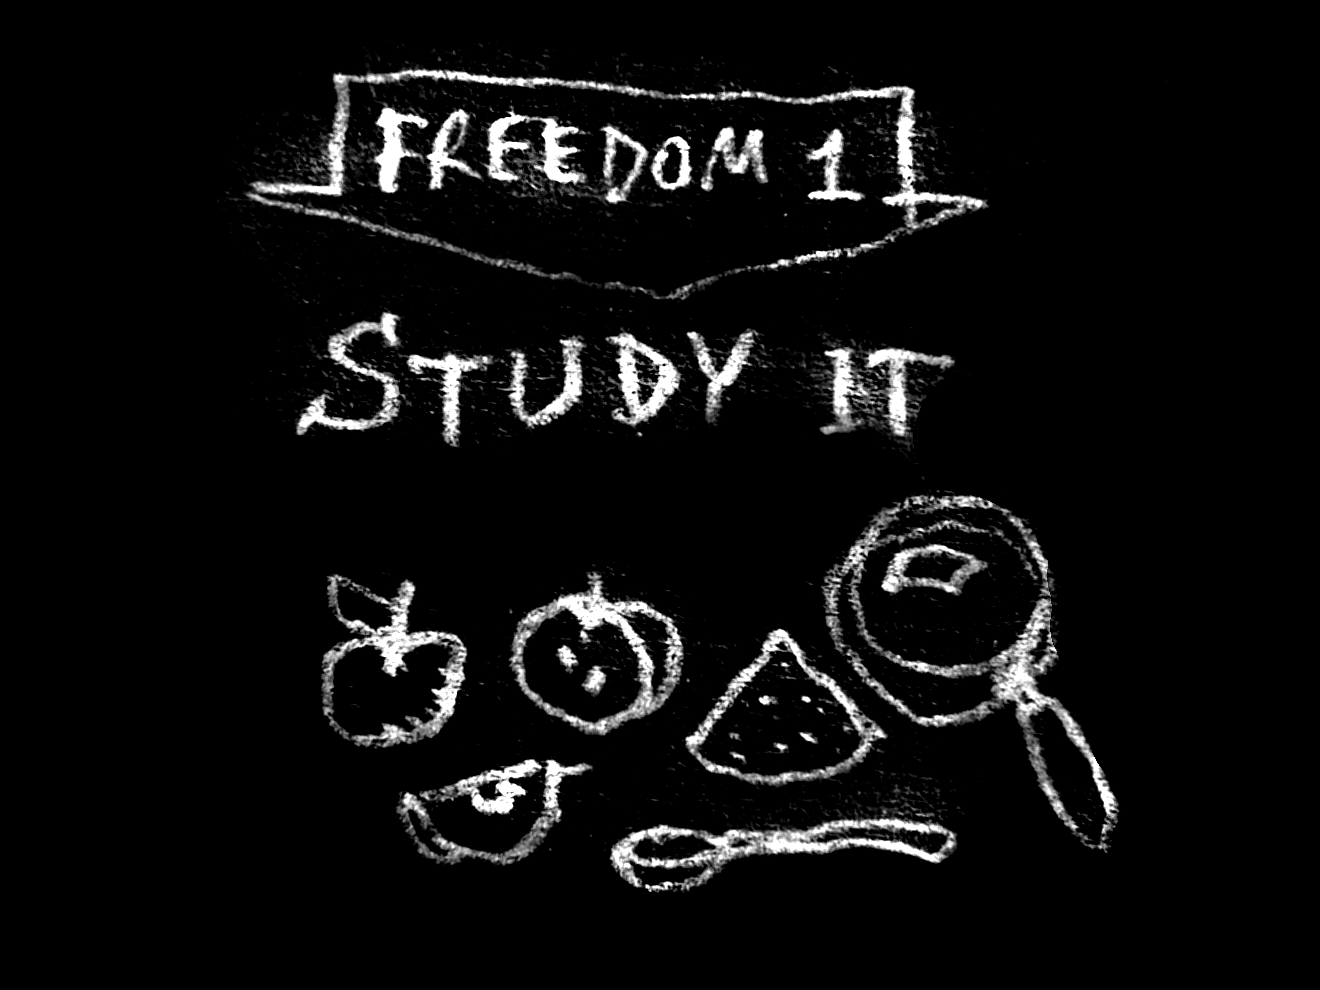 Freedom 1 - study
it